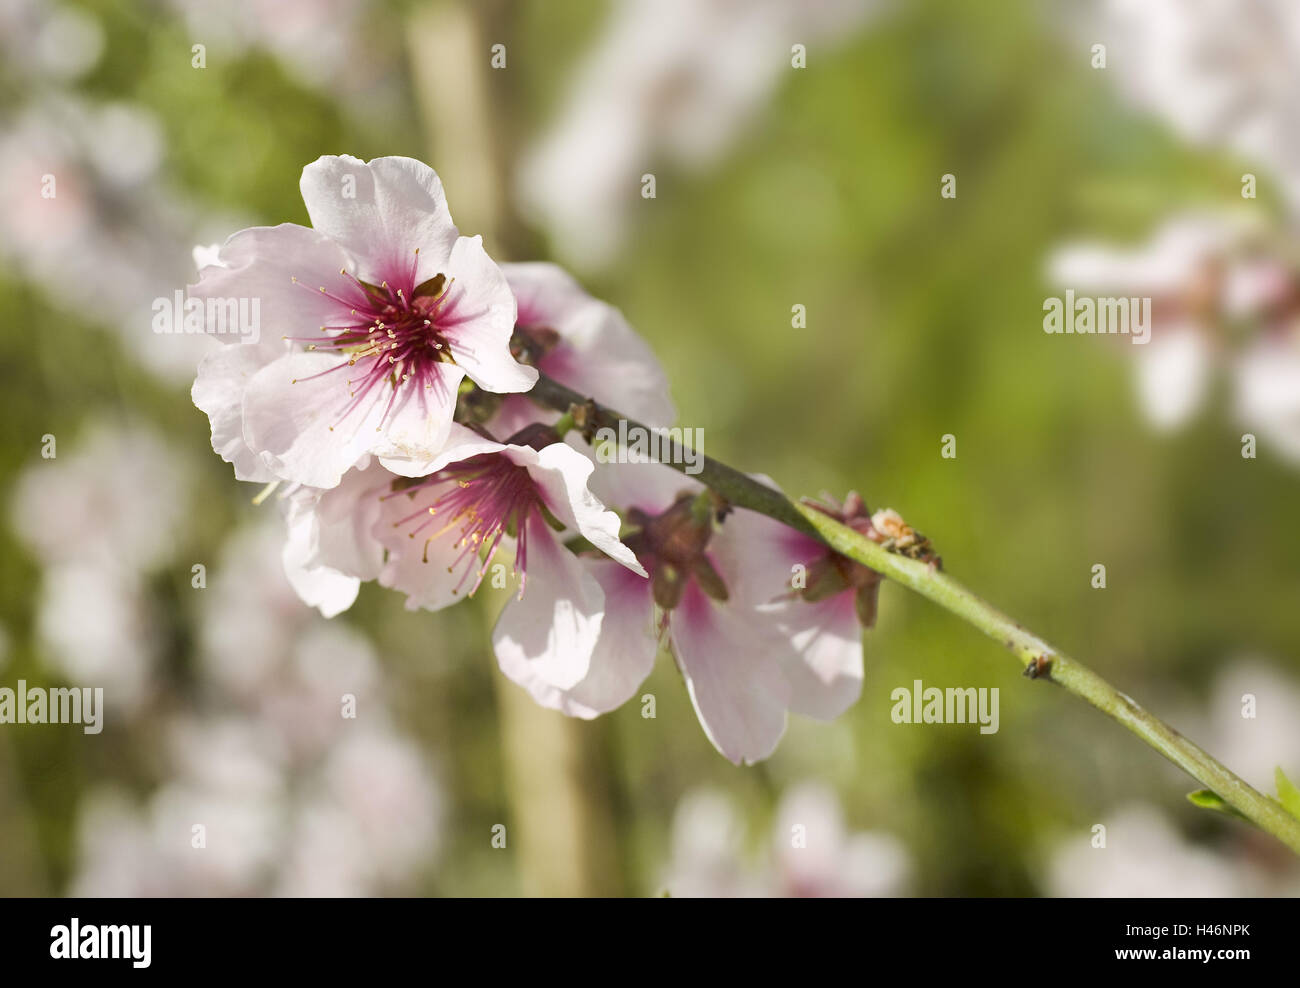 Sweet tonsil, Prunus dulcis, flowering branch, close up, garden, Stock Photo